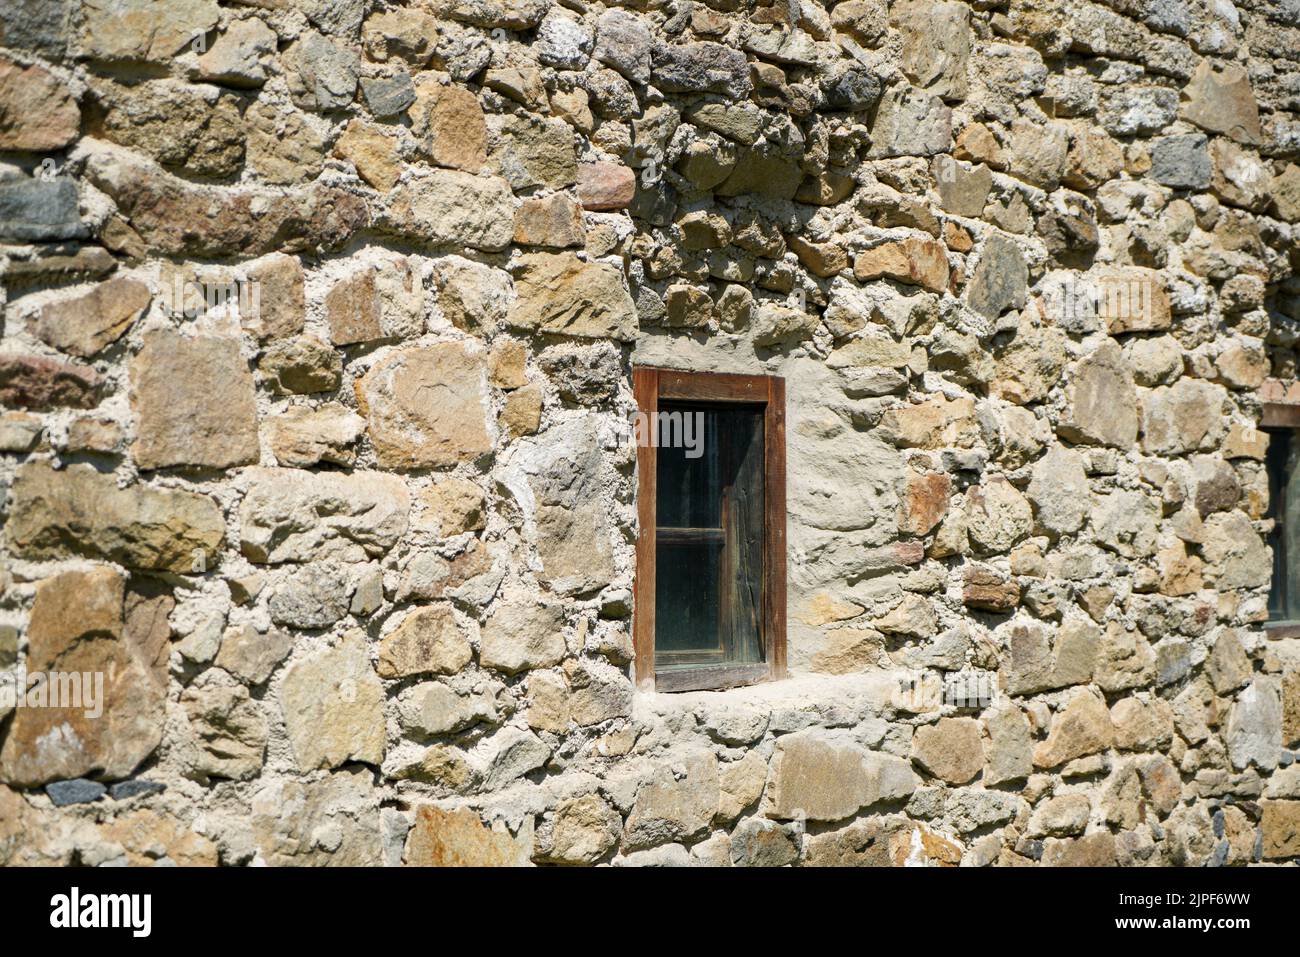 Ein kleines Holzfenster in der Steinmauer eines alten Hauses  Stockfotografie - Alamy